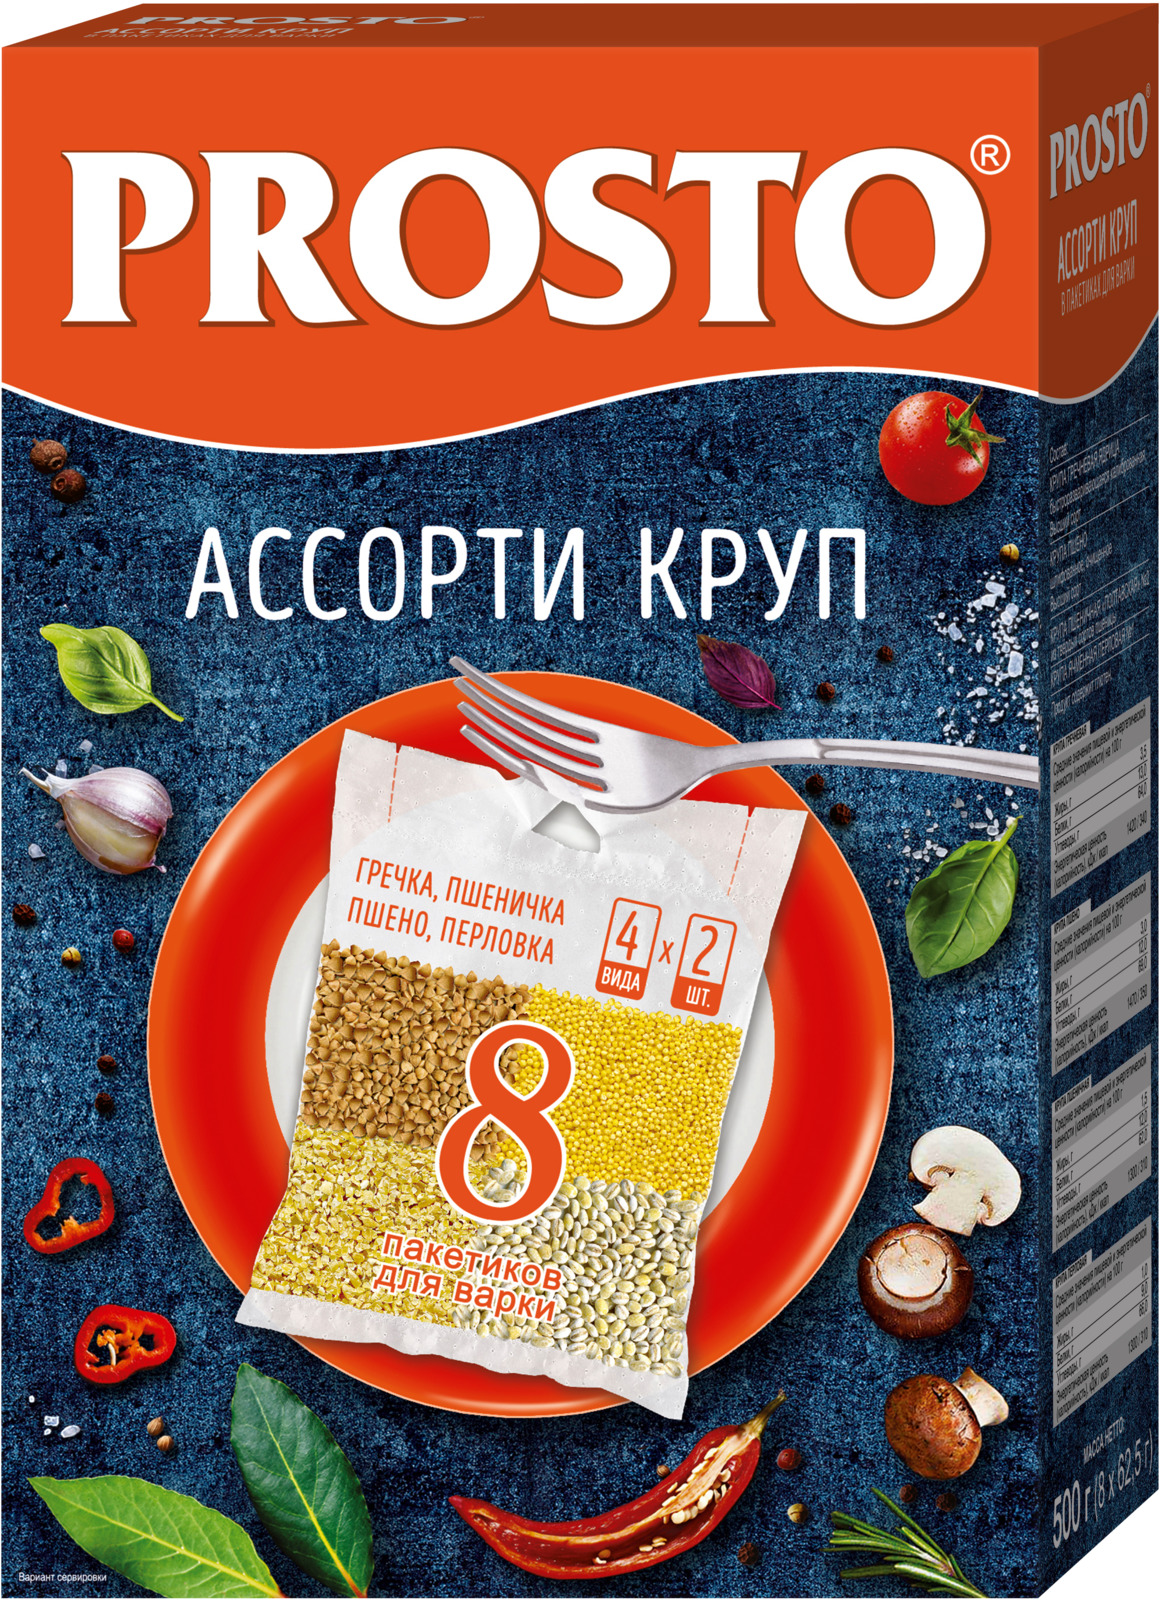 Prosto ассорти круп греча, пшено, пшеничная, перловка в пакетиках для варки, 8 шт по 62,5 г